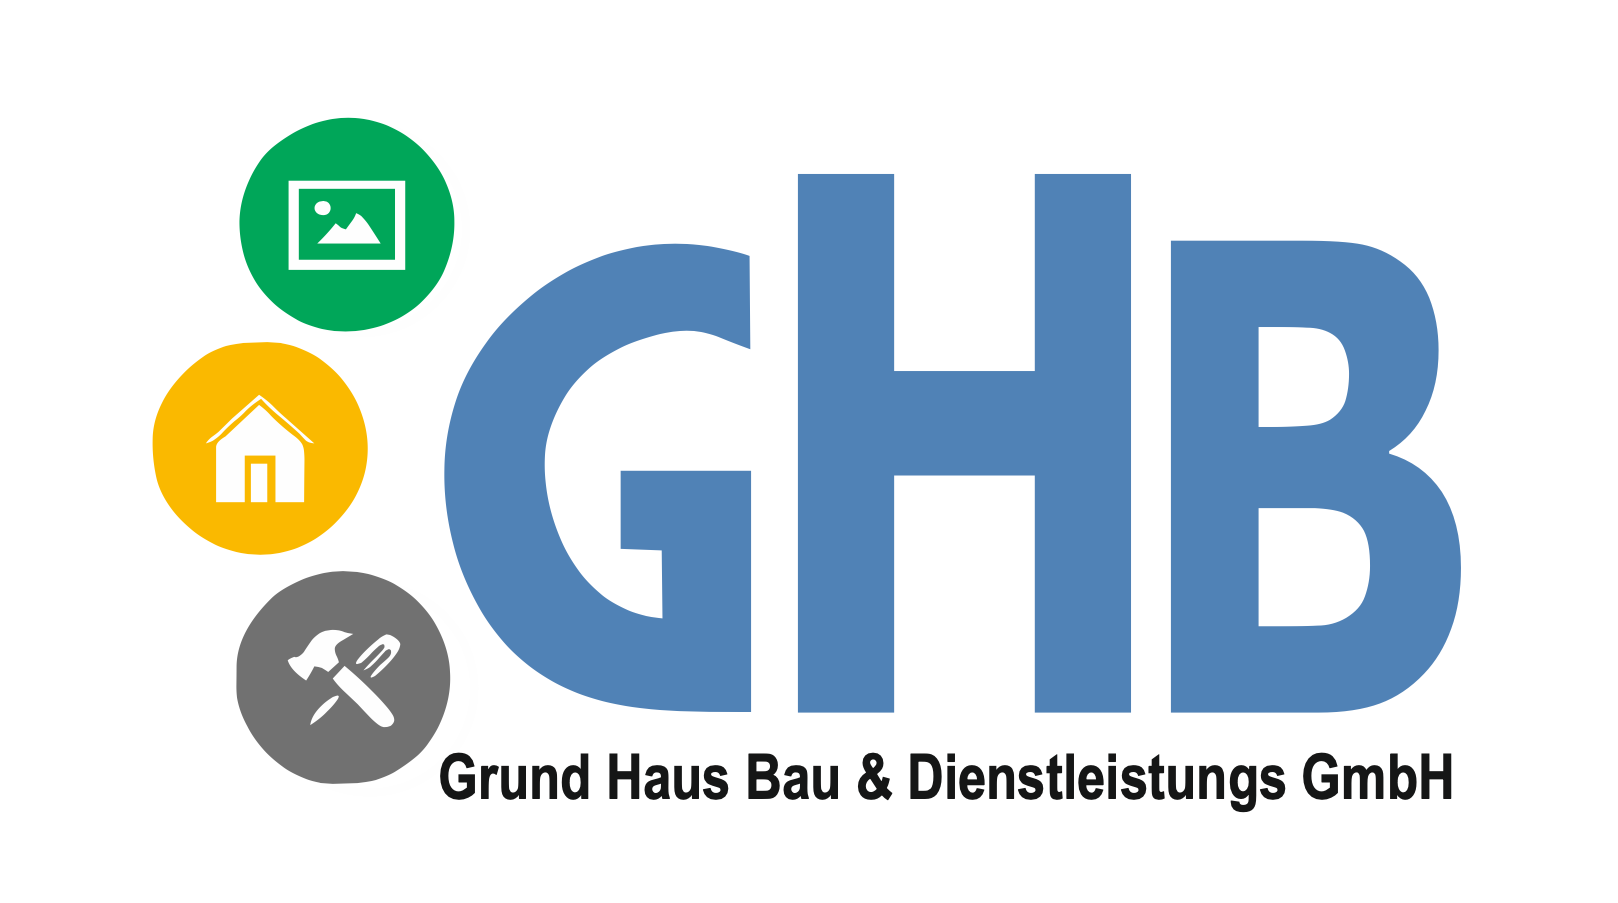 Grund Haus Bau & Dienstleistungs GmbH als zuverlässiger Baupartner der Dangel Solution.